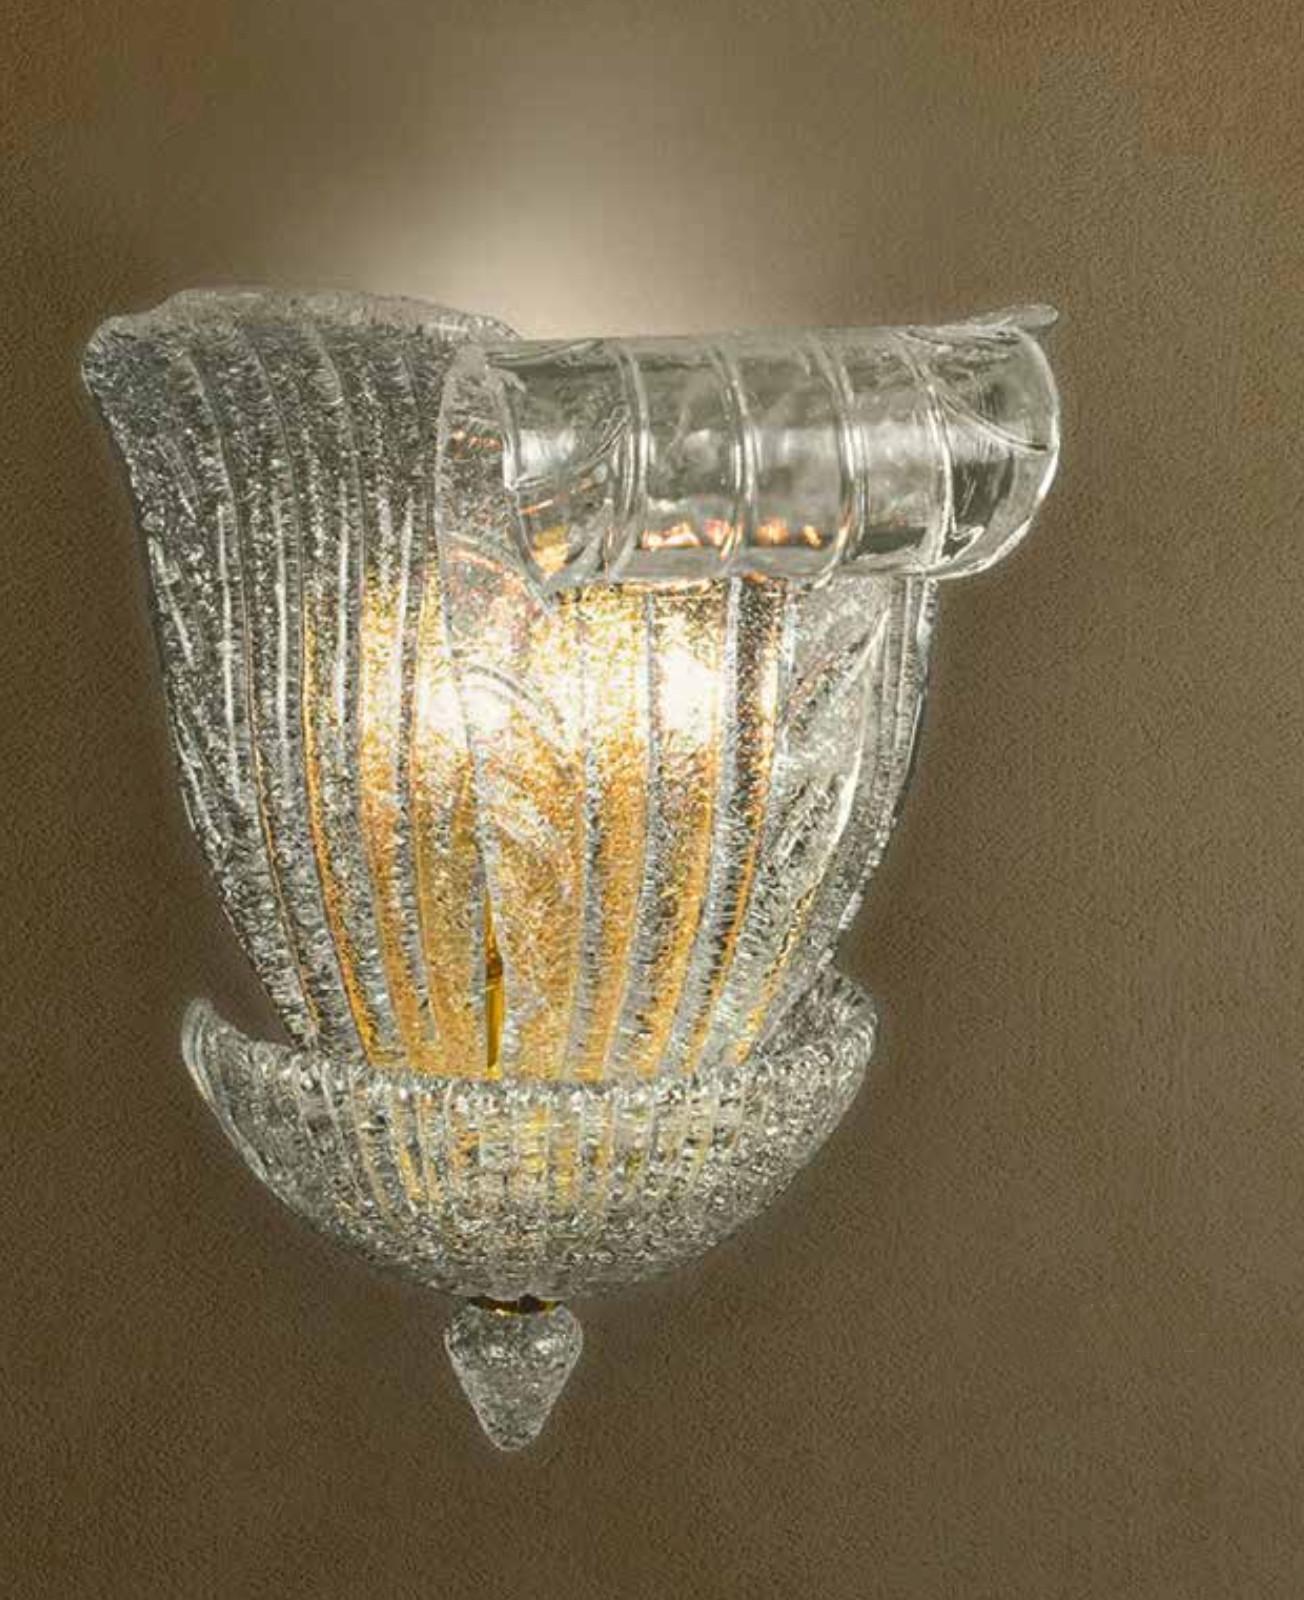 Italienische Wandleuchte mit Blättern aus klarem Murano-Glas, mundgeblasen in Graniglia-Technik, um einen körnigen, strukturierten Effekt zu erzeugen, montiert auf einem 24 K vergoldeten Metallrahmen / Hergestellt in Italien im Stil von Barovier e